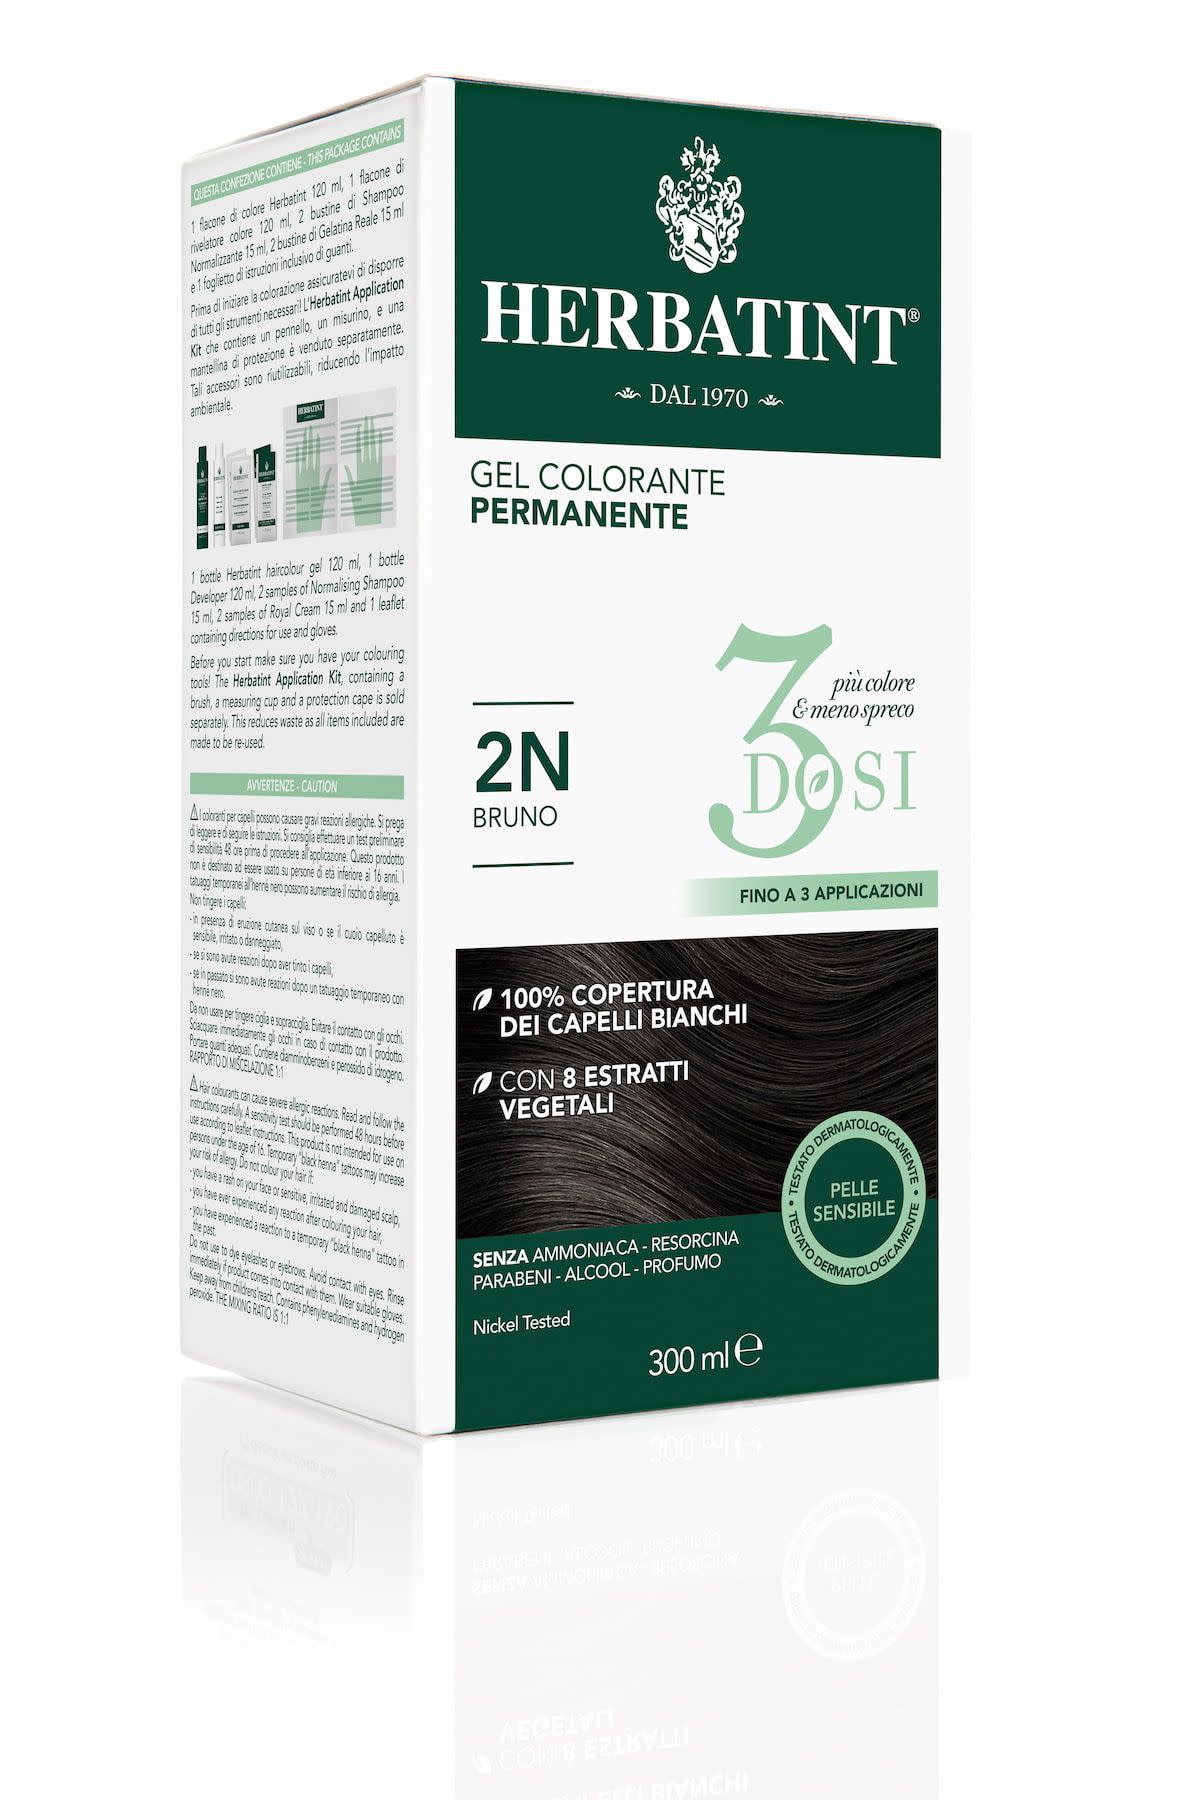 975906660 - Herbatint Gel colorante permanente 3 dosi 2N bruno 300ml - 4732907_2.jpg